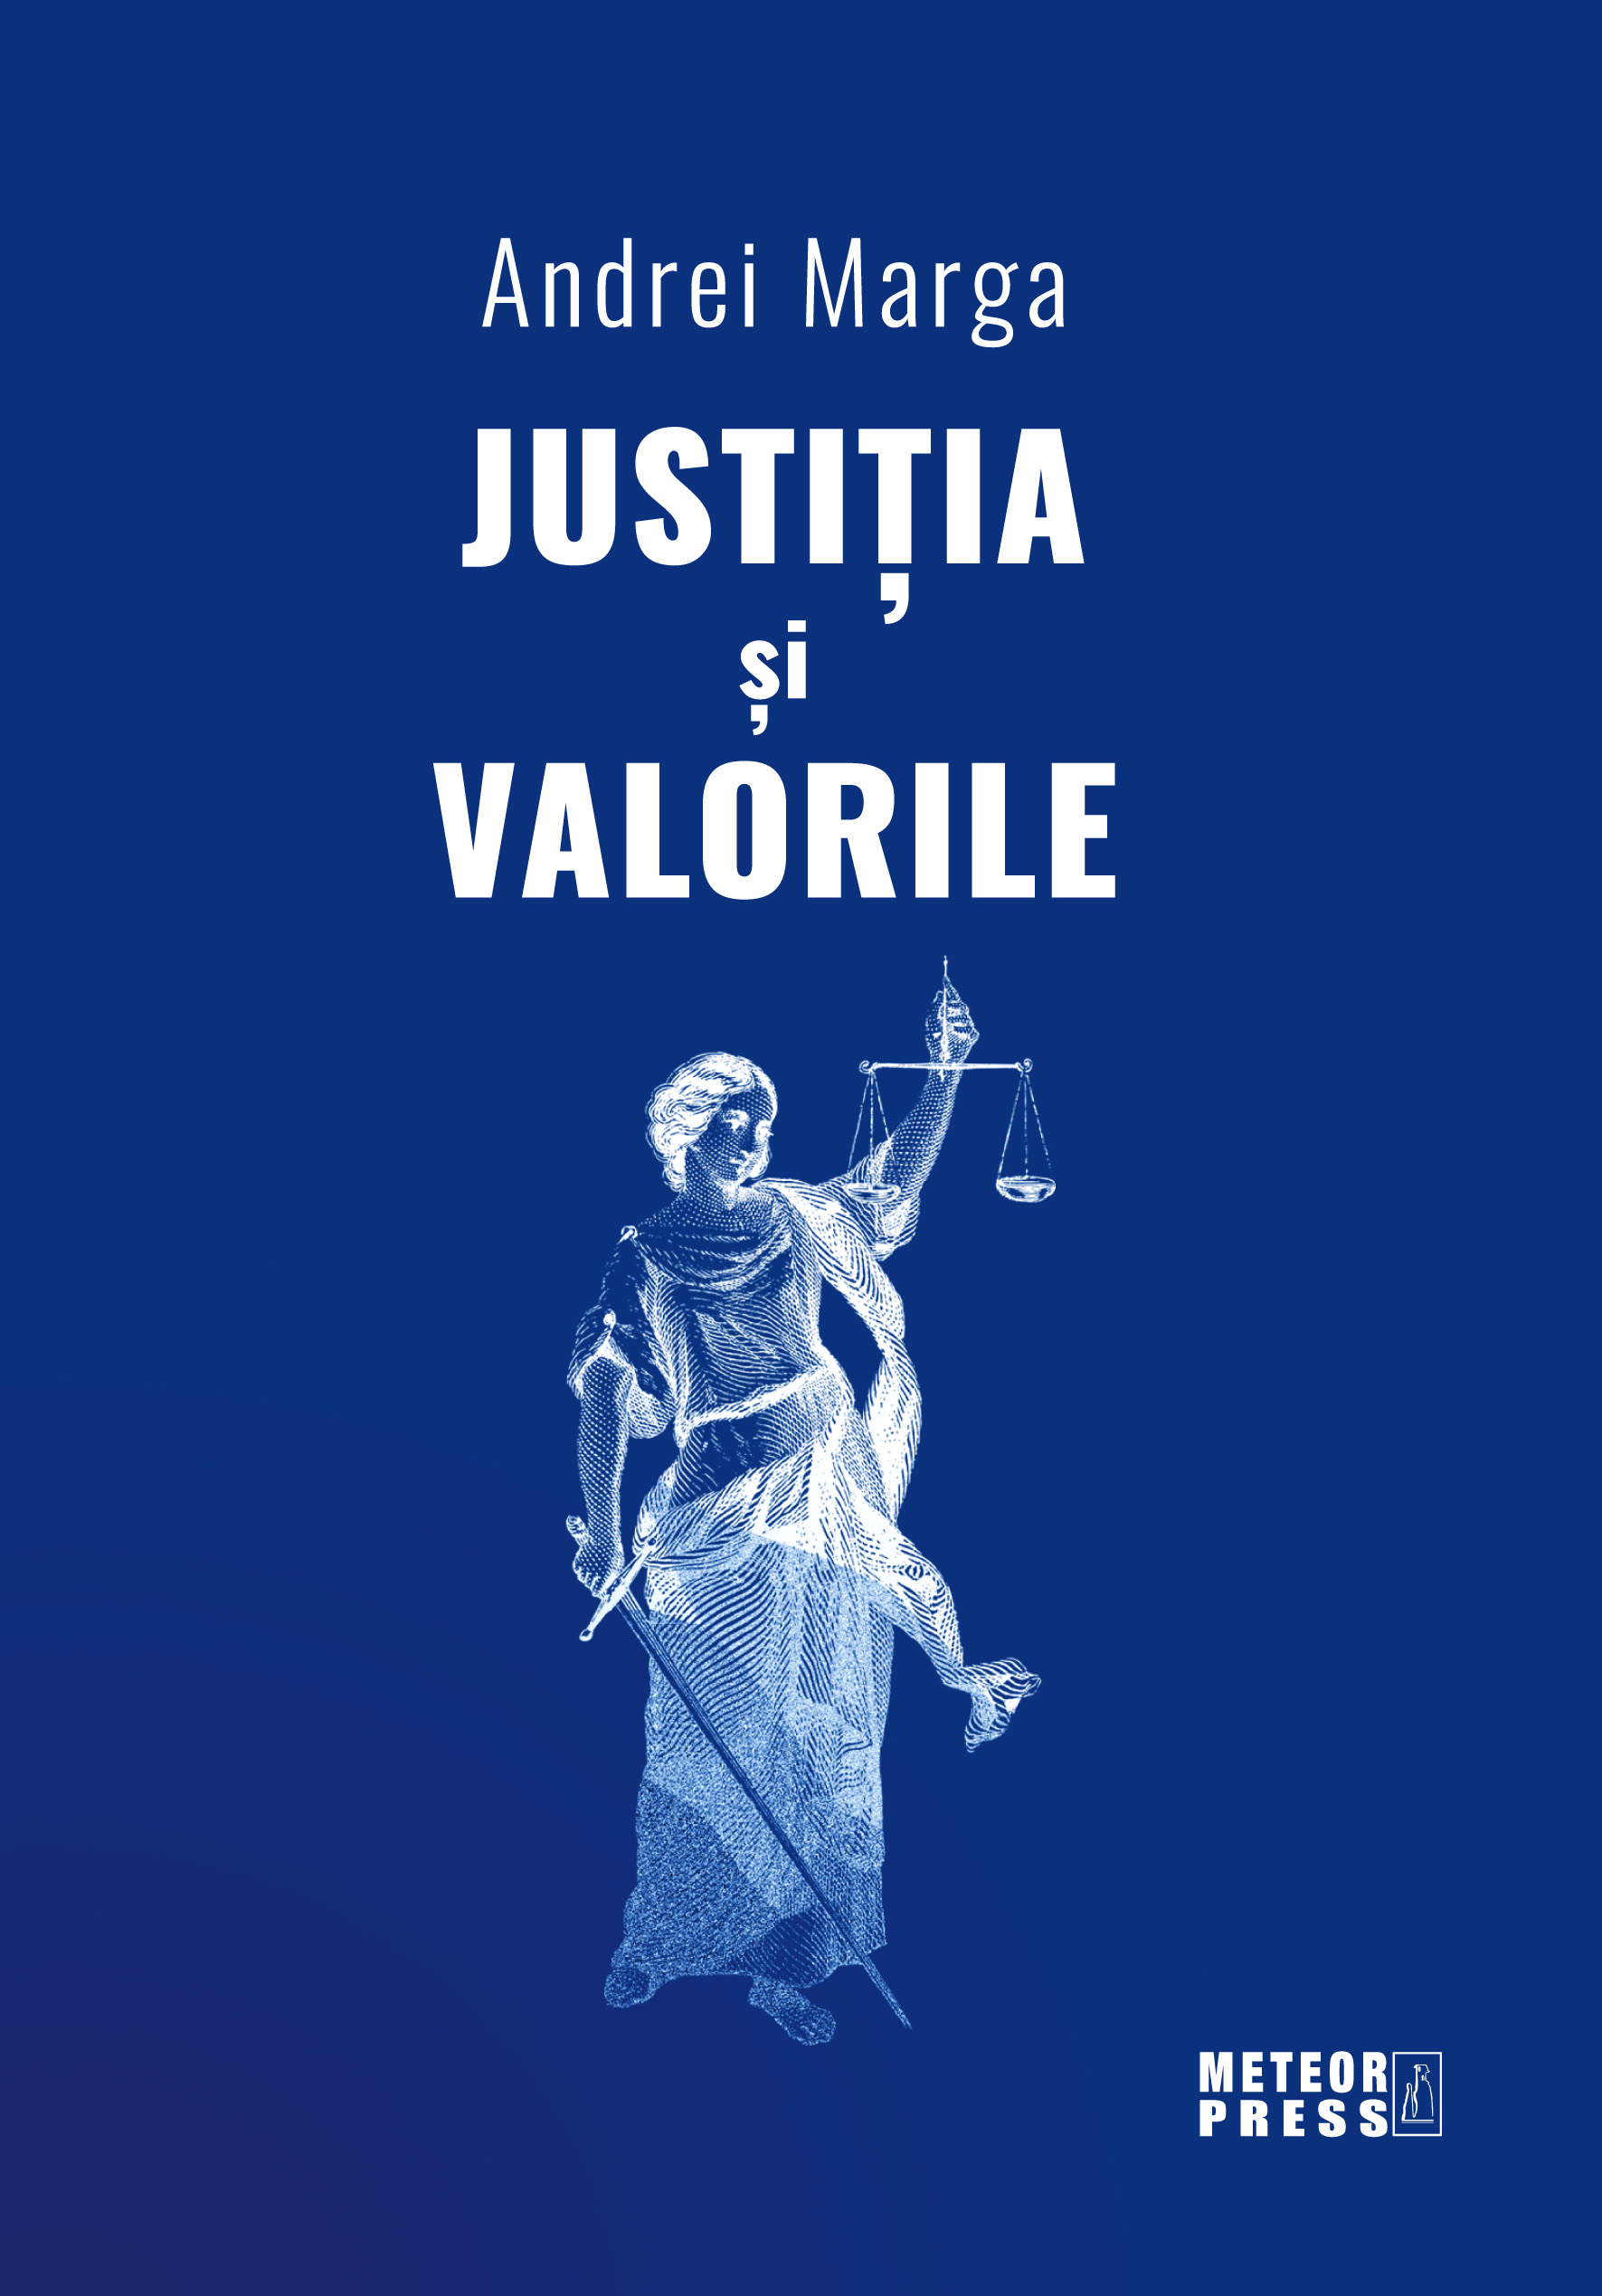 Justitia si valorile